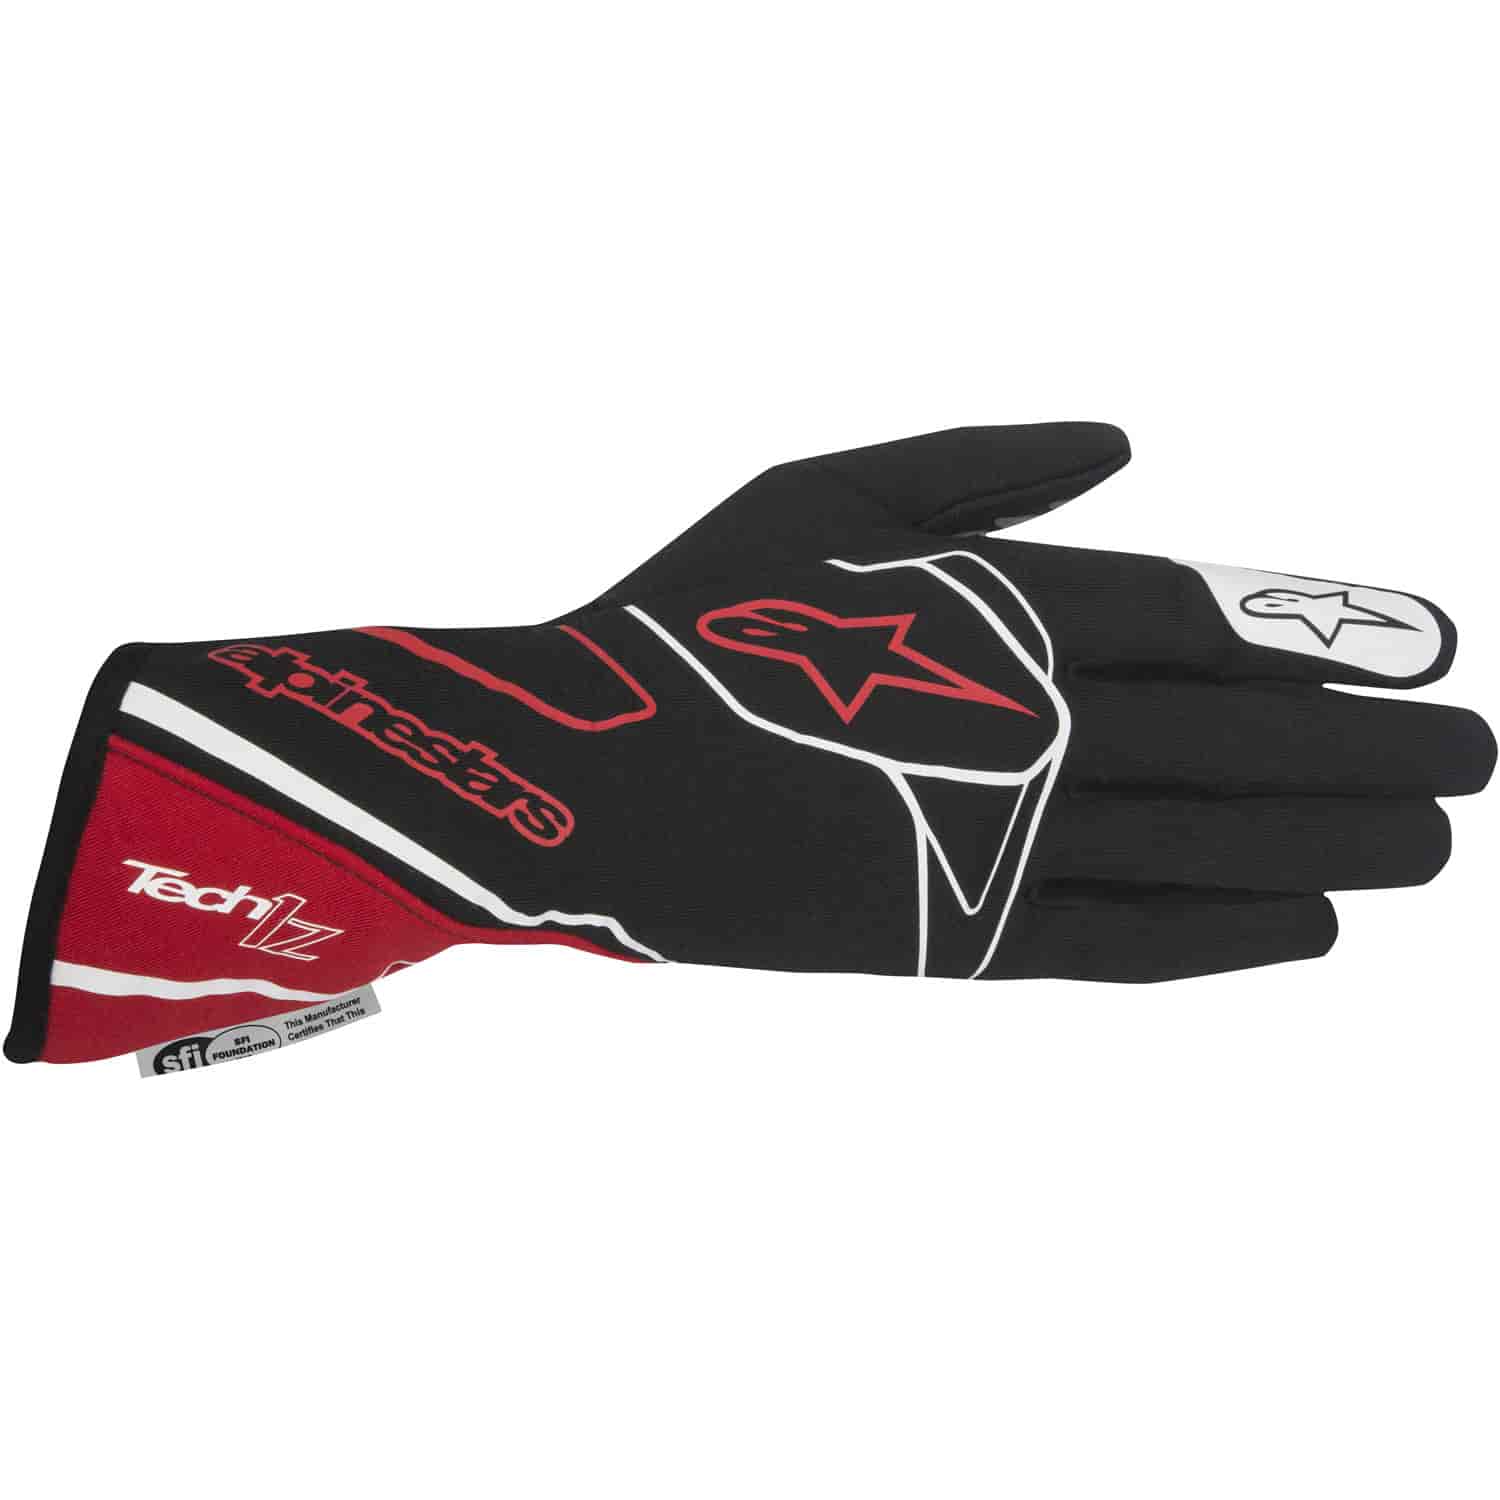 Tech 1-Z Glove Black/Red/White SFI 3.3/5